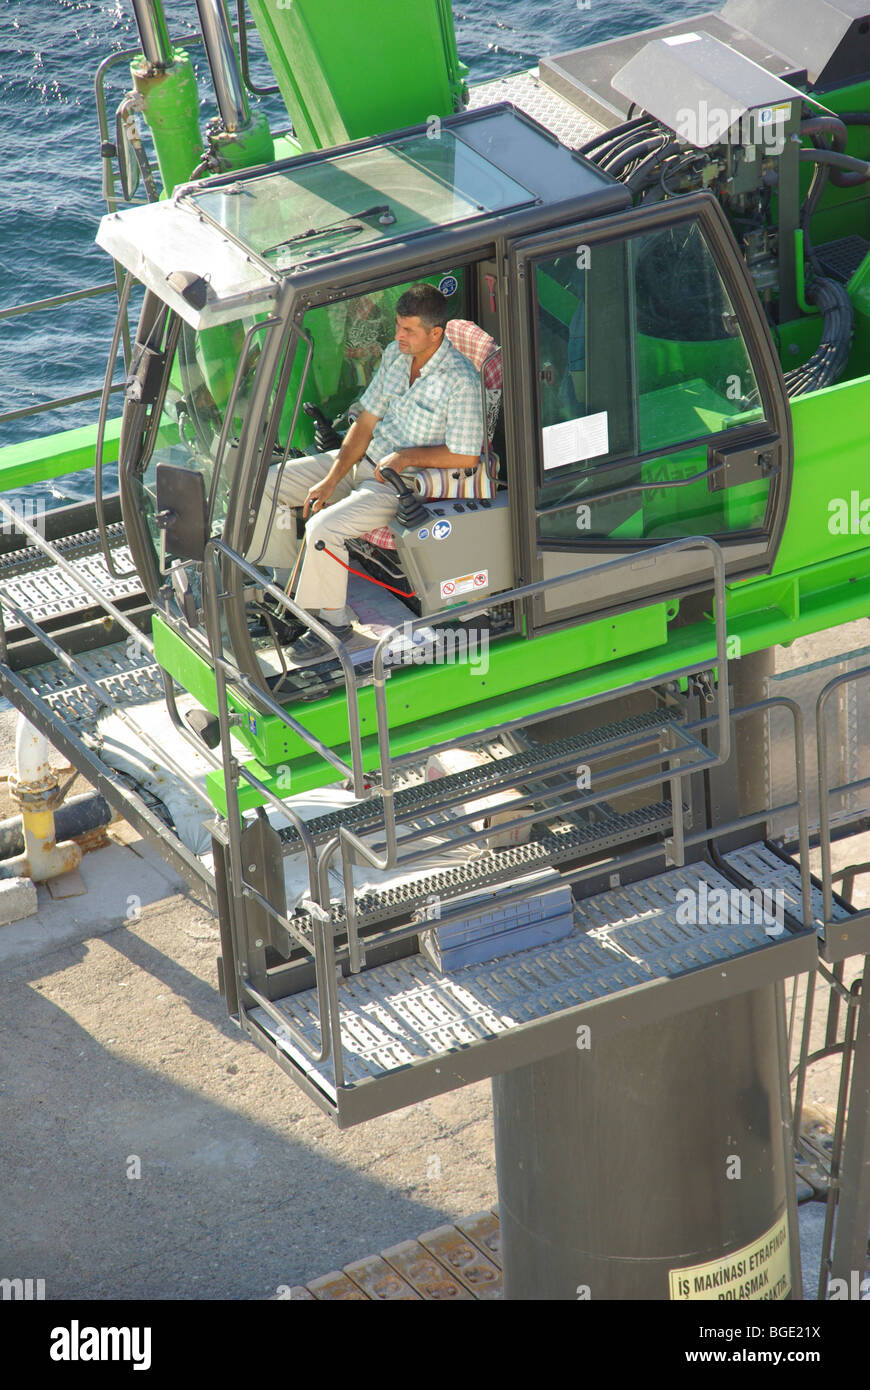 Vue de dessus de l'arsenal à la grue mobile à bas et conducteur assis dans la cabine de contrôle au port turc en Asie Turquie Province de Çanakkale Banque D'Images